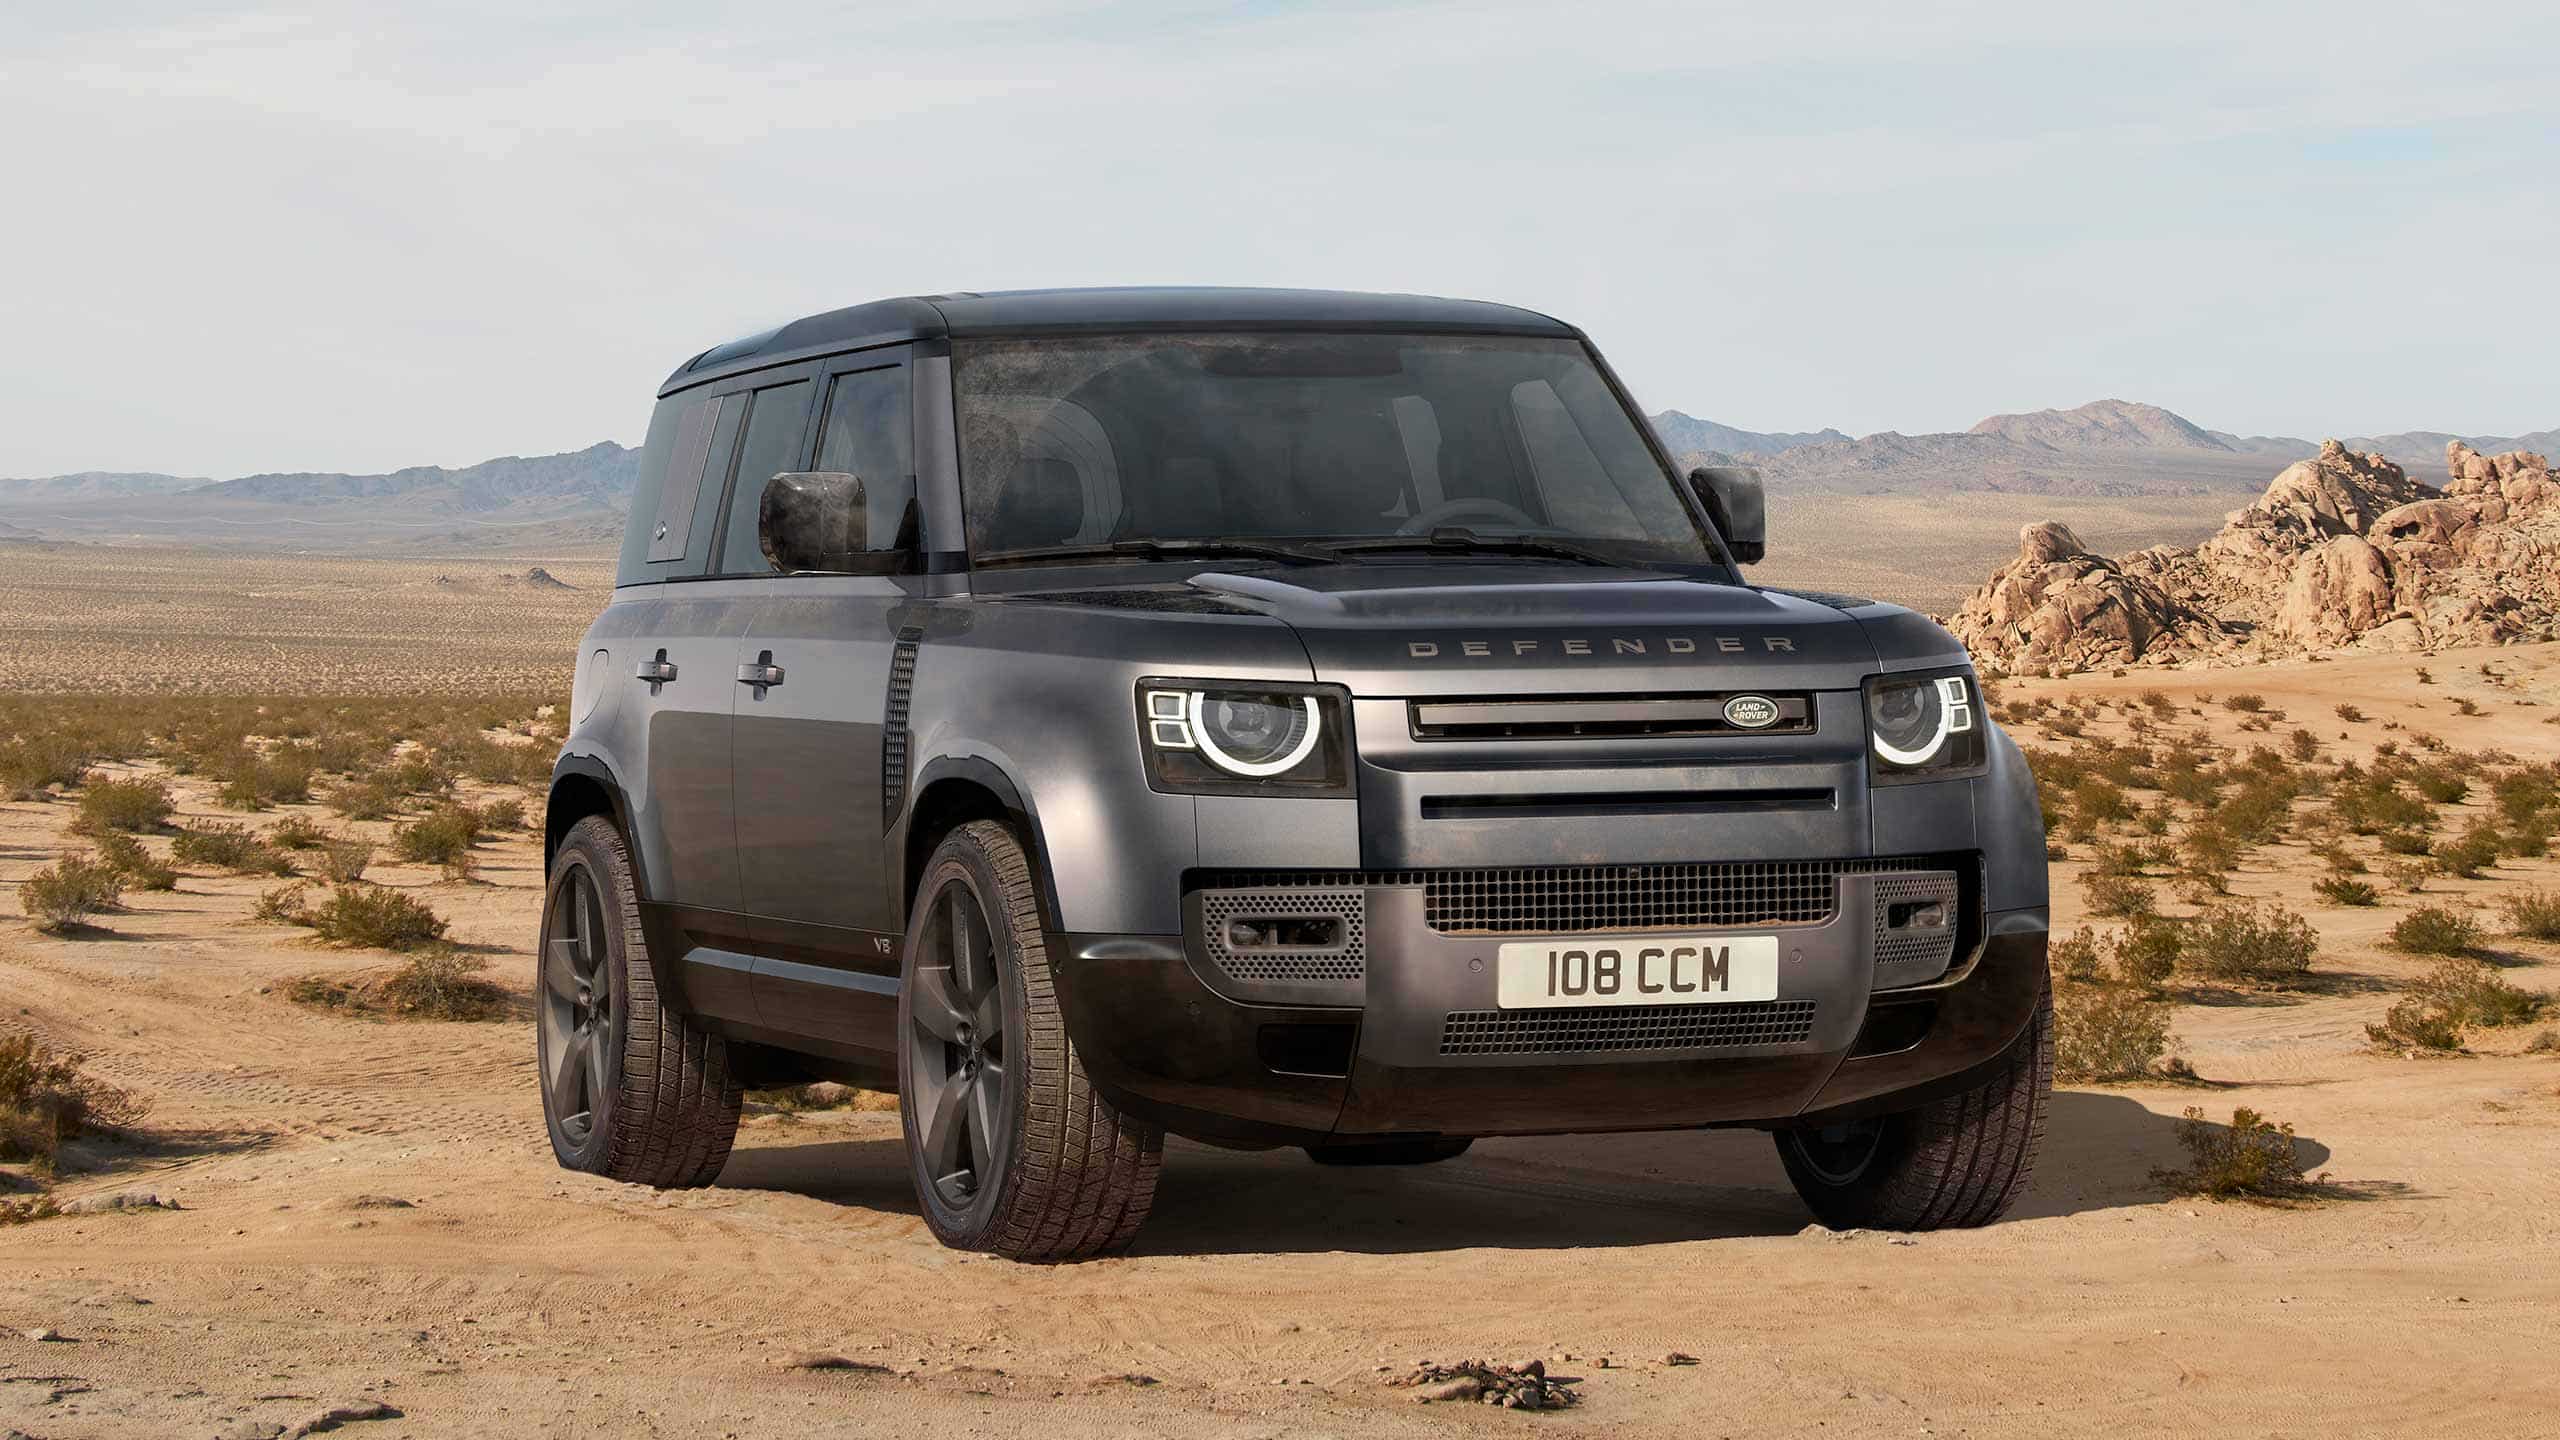 Land Rover Defender black in desert scenery